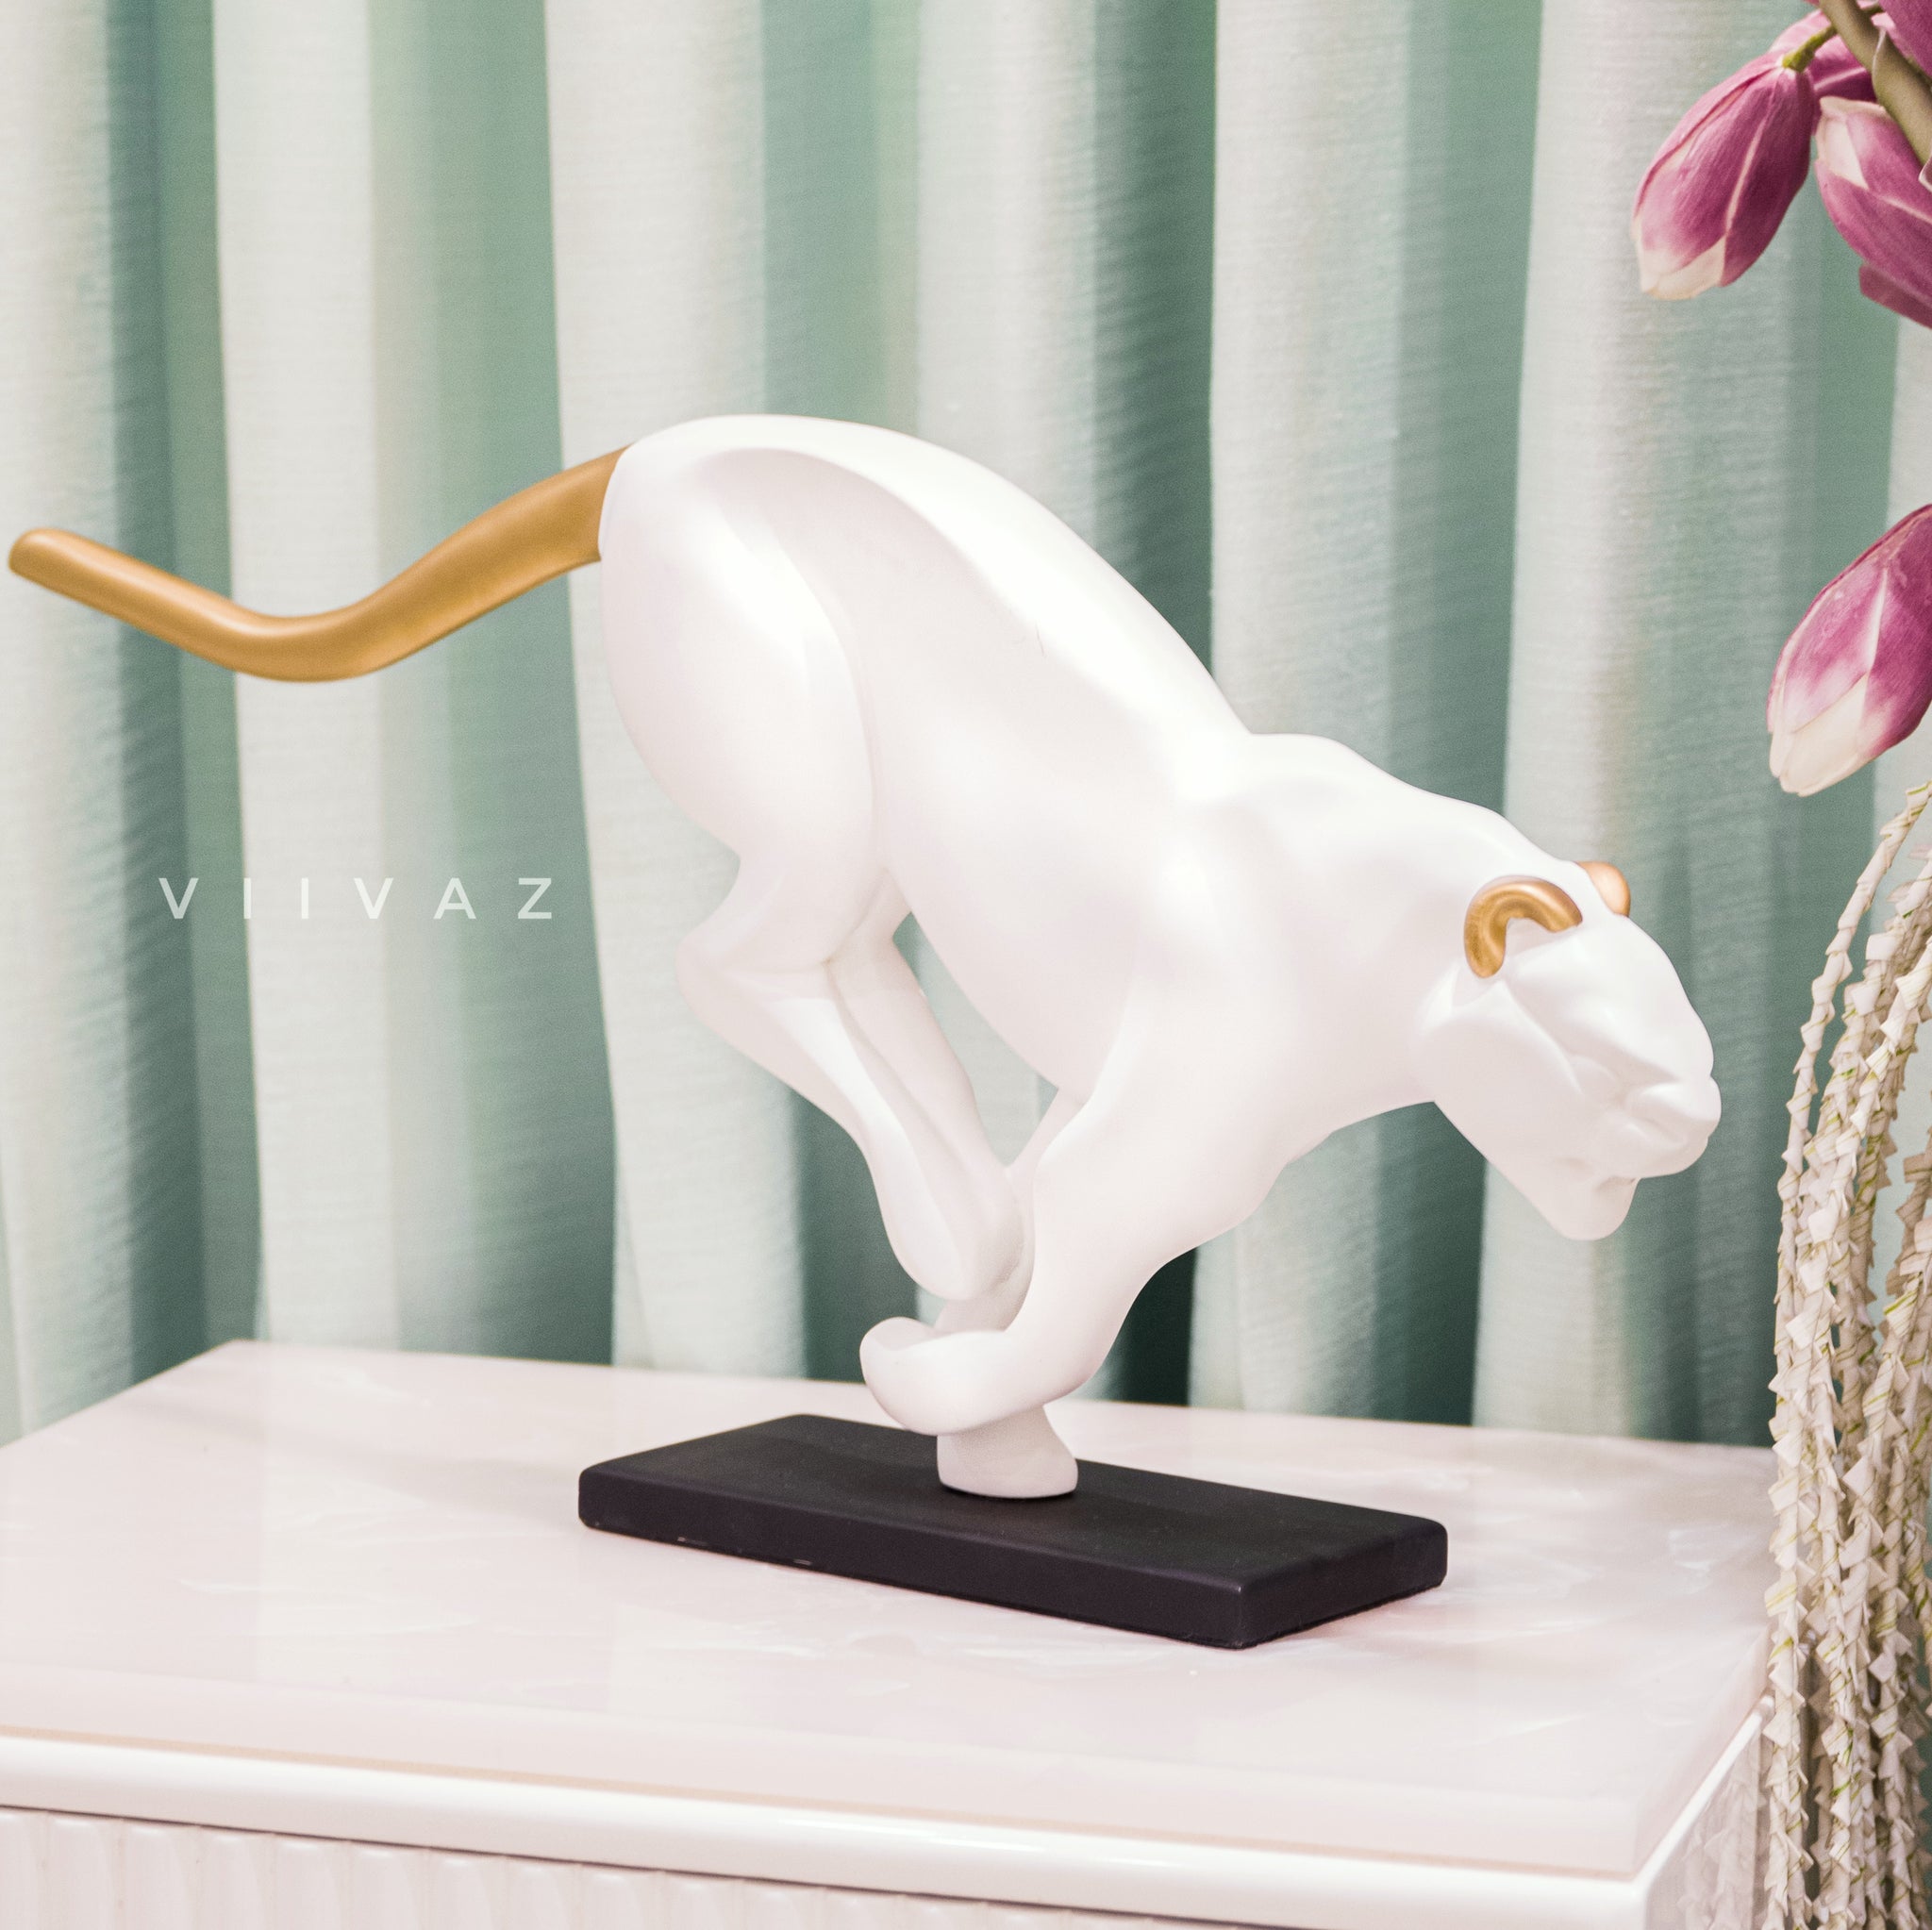 Chivalrous Cougar Sculpture - Curtsied Creature